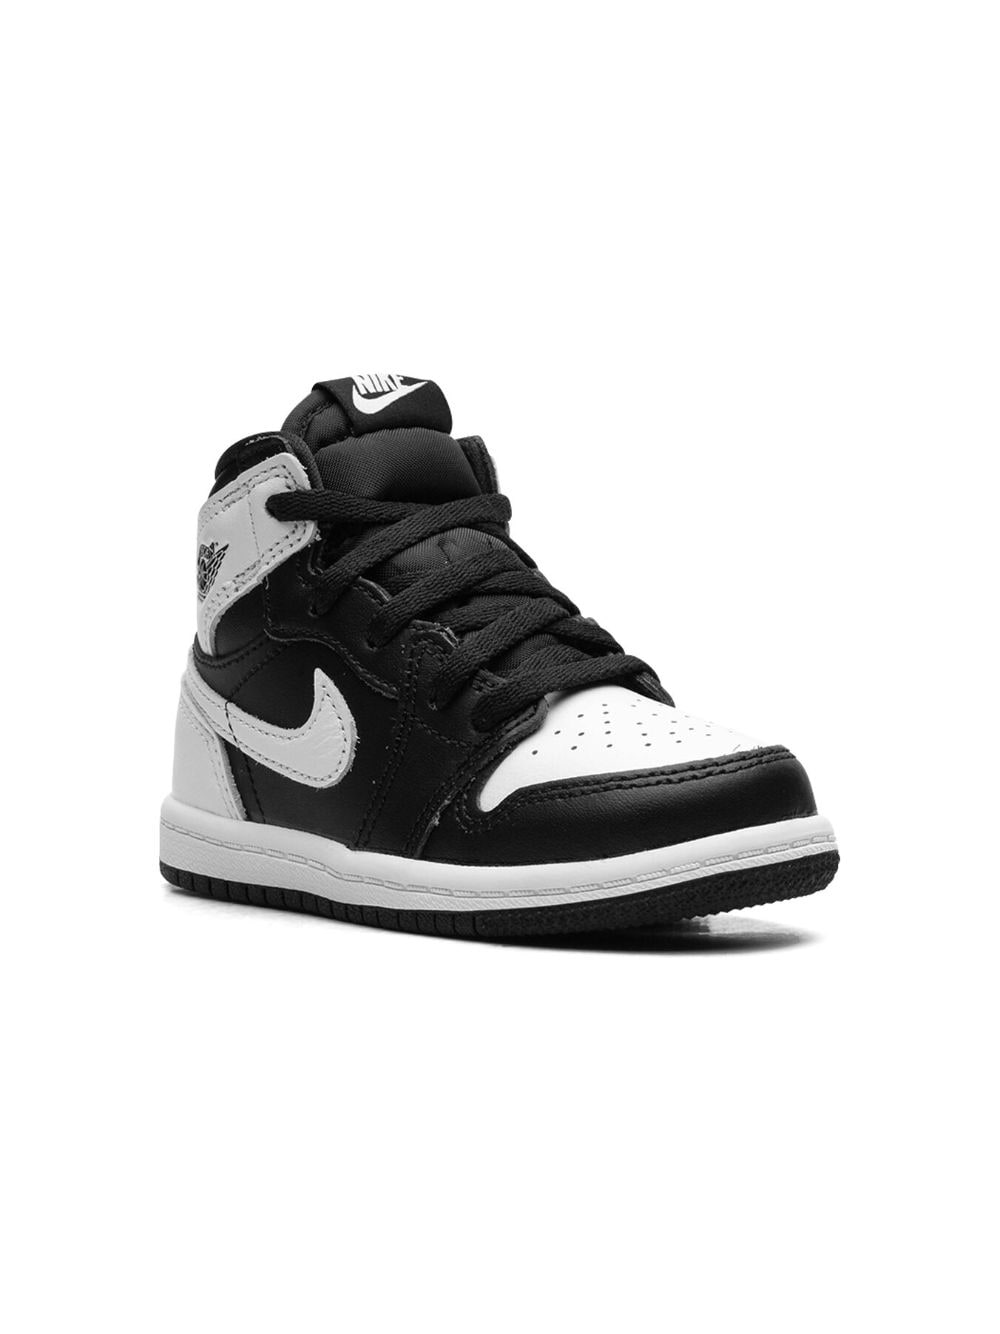 Jordan Kids Air Jordan 1 Retro High OG "Reverse Panda" sneakers Black